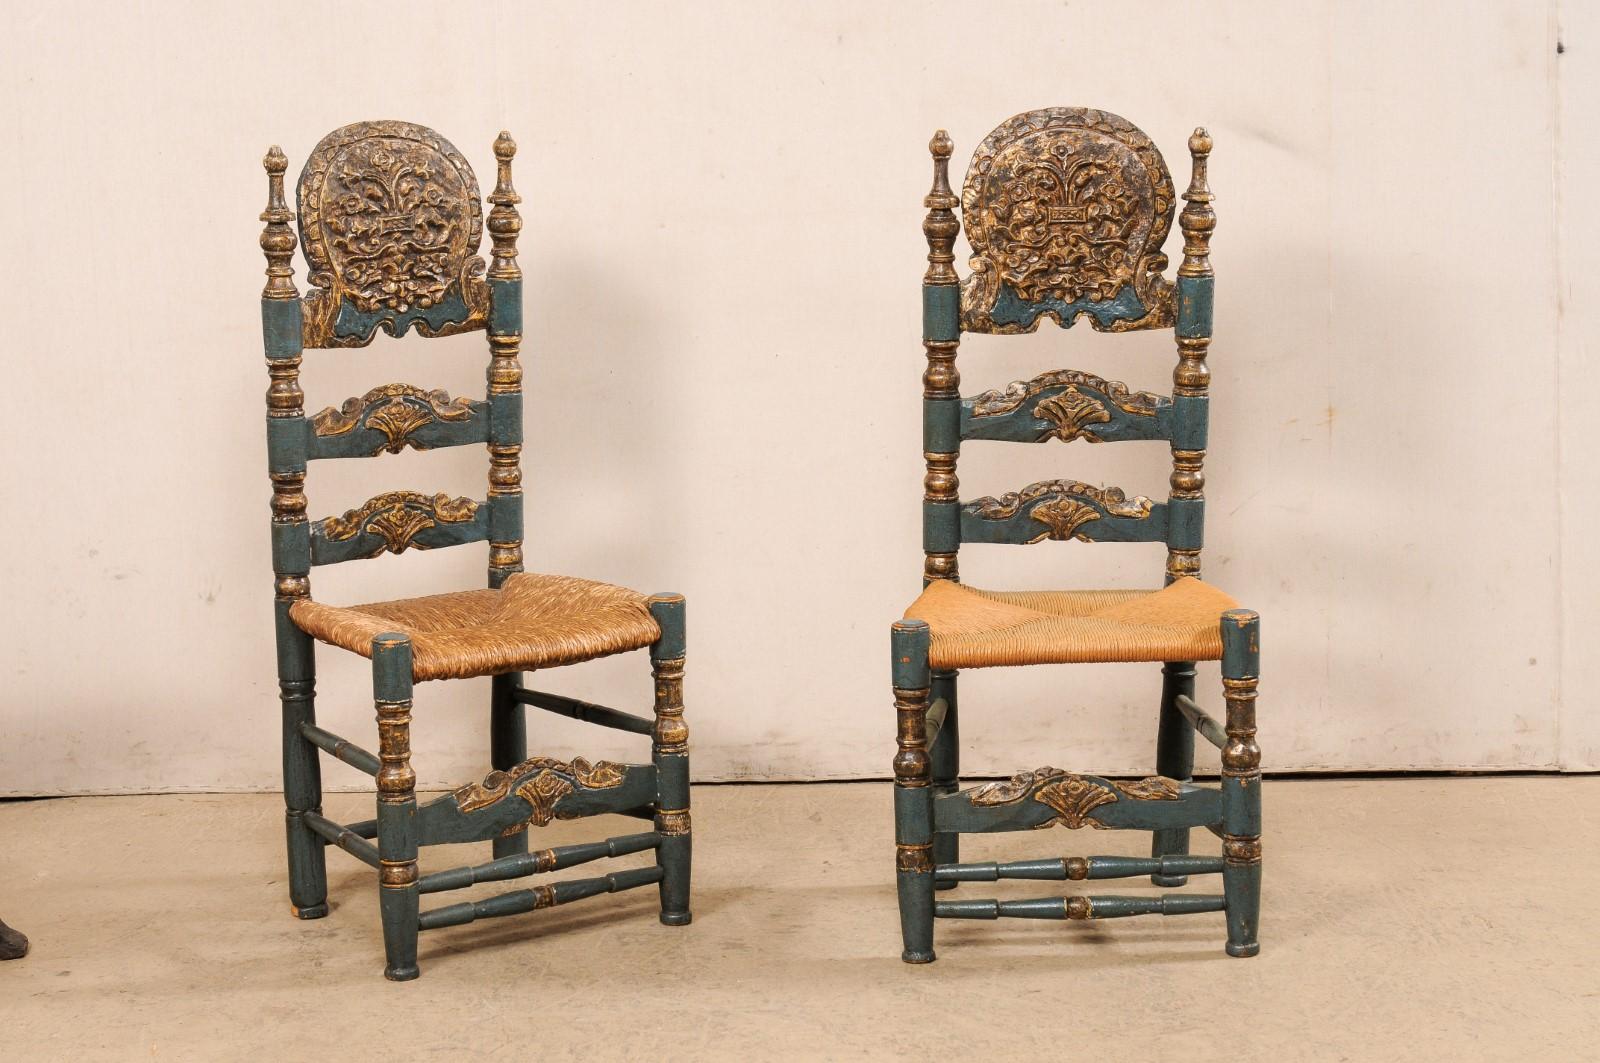 Ein spanisches Paar geschnitzter und bemalter Holzstühle im Kolonialstil mit Leiterlehne und gepolsterten Sitzen. Dieses Vintage-Stuhlpaar aus Spanien, entworfen im spanischen Kolonialstil des 18. Jahrhunderts, hat kunstvoll geschnitzte Kopfstützen